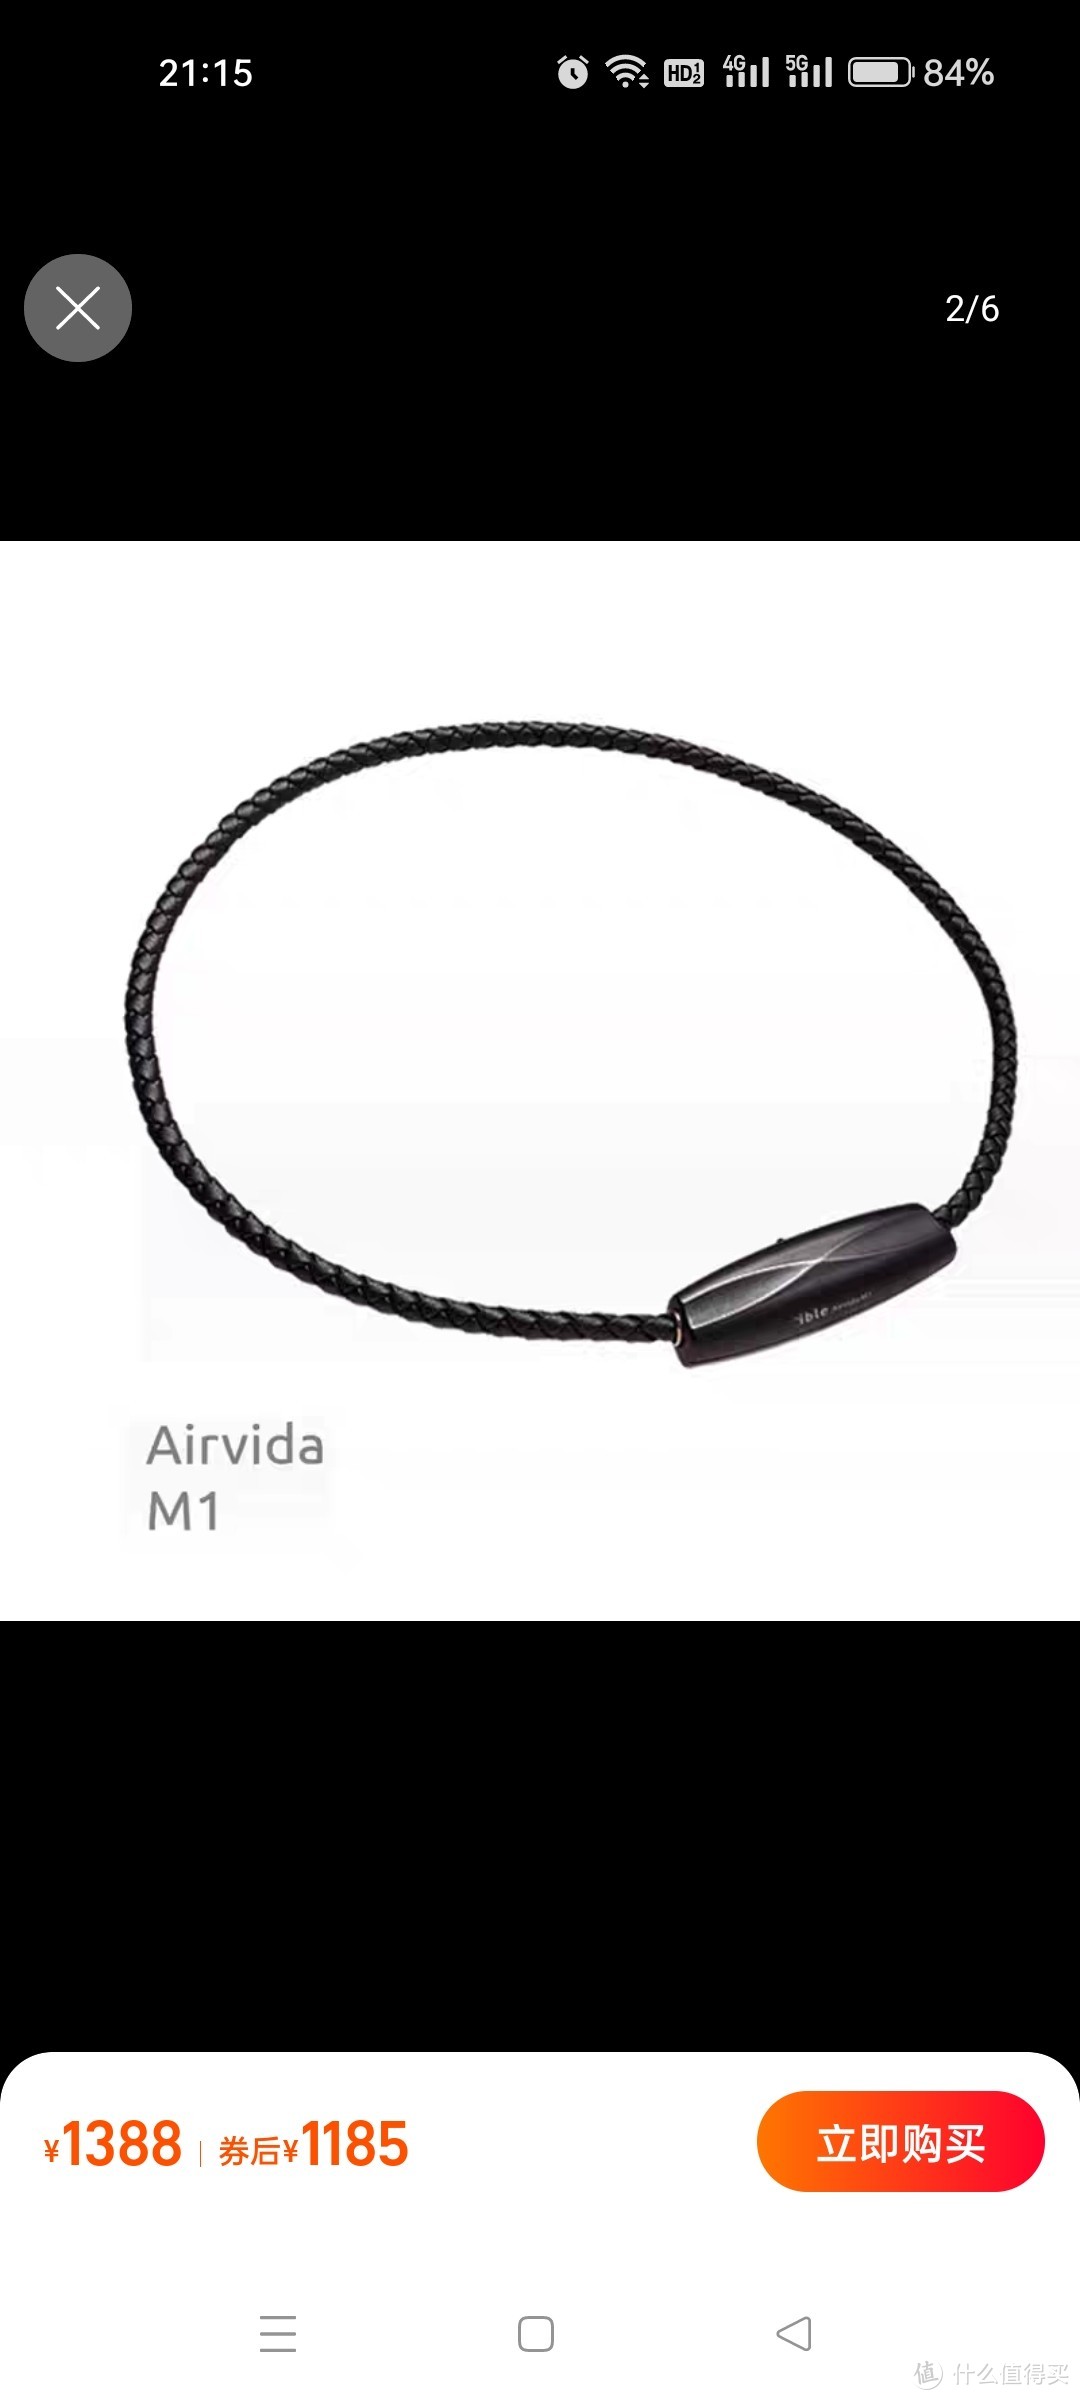 ible Airvida M1 頸掛空氣清淨機 负离子随身空气净化器 钛圈编织